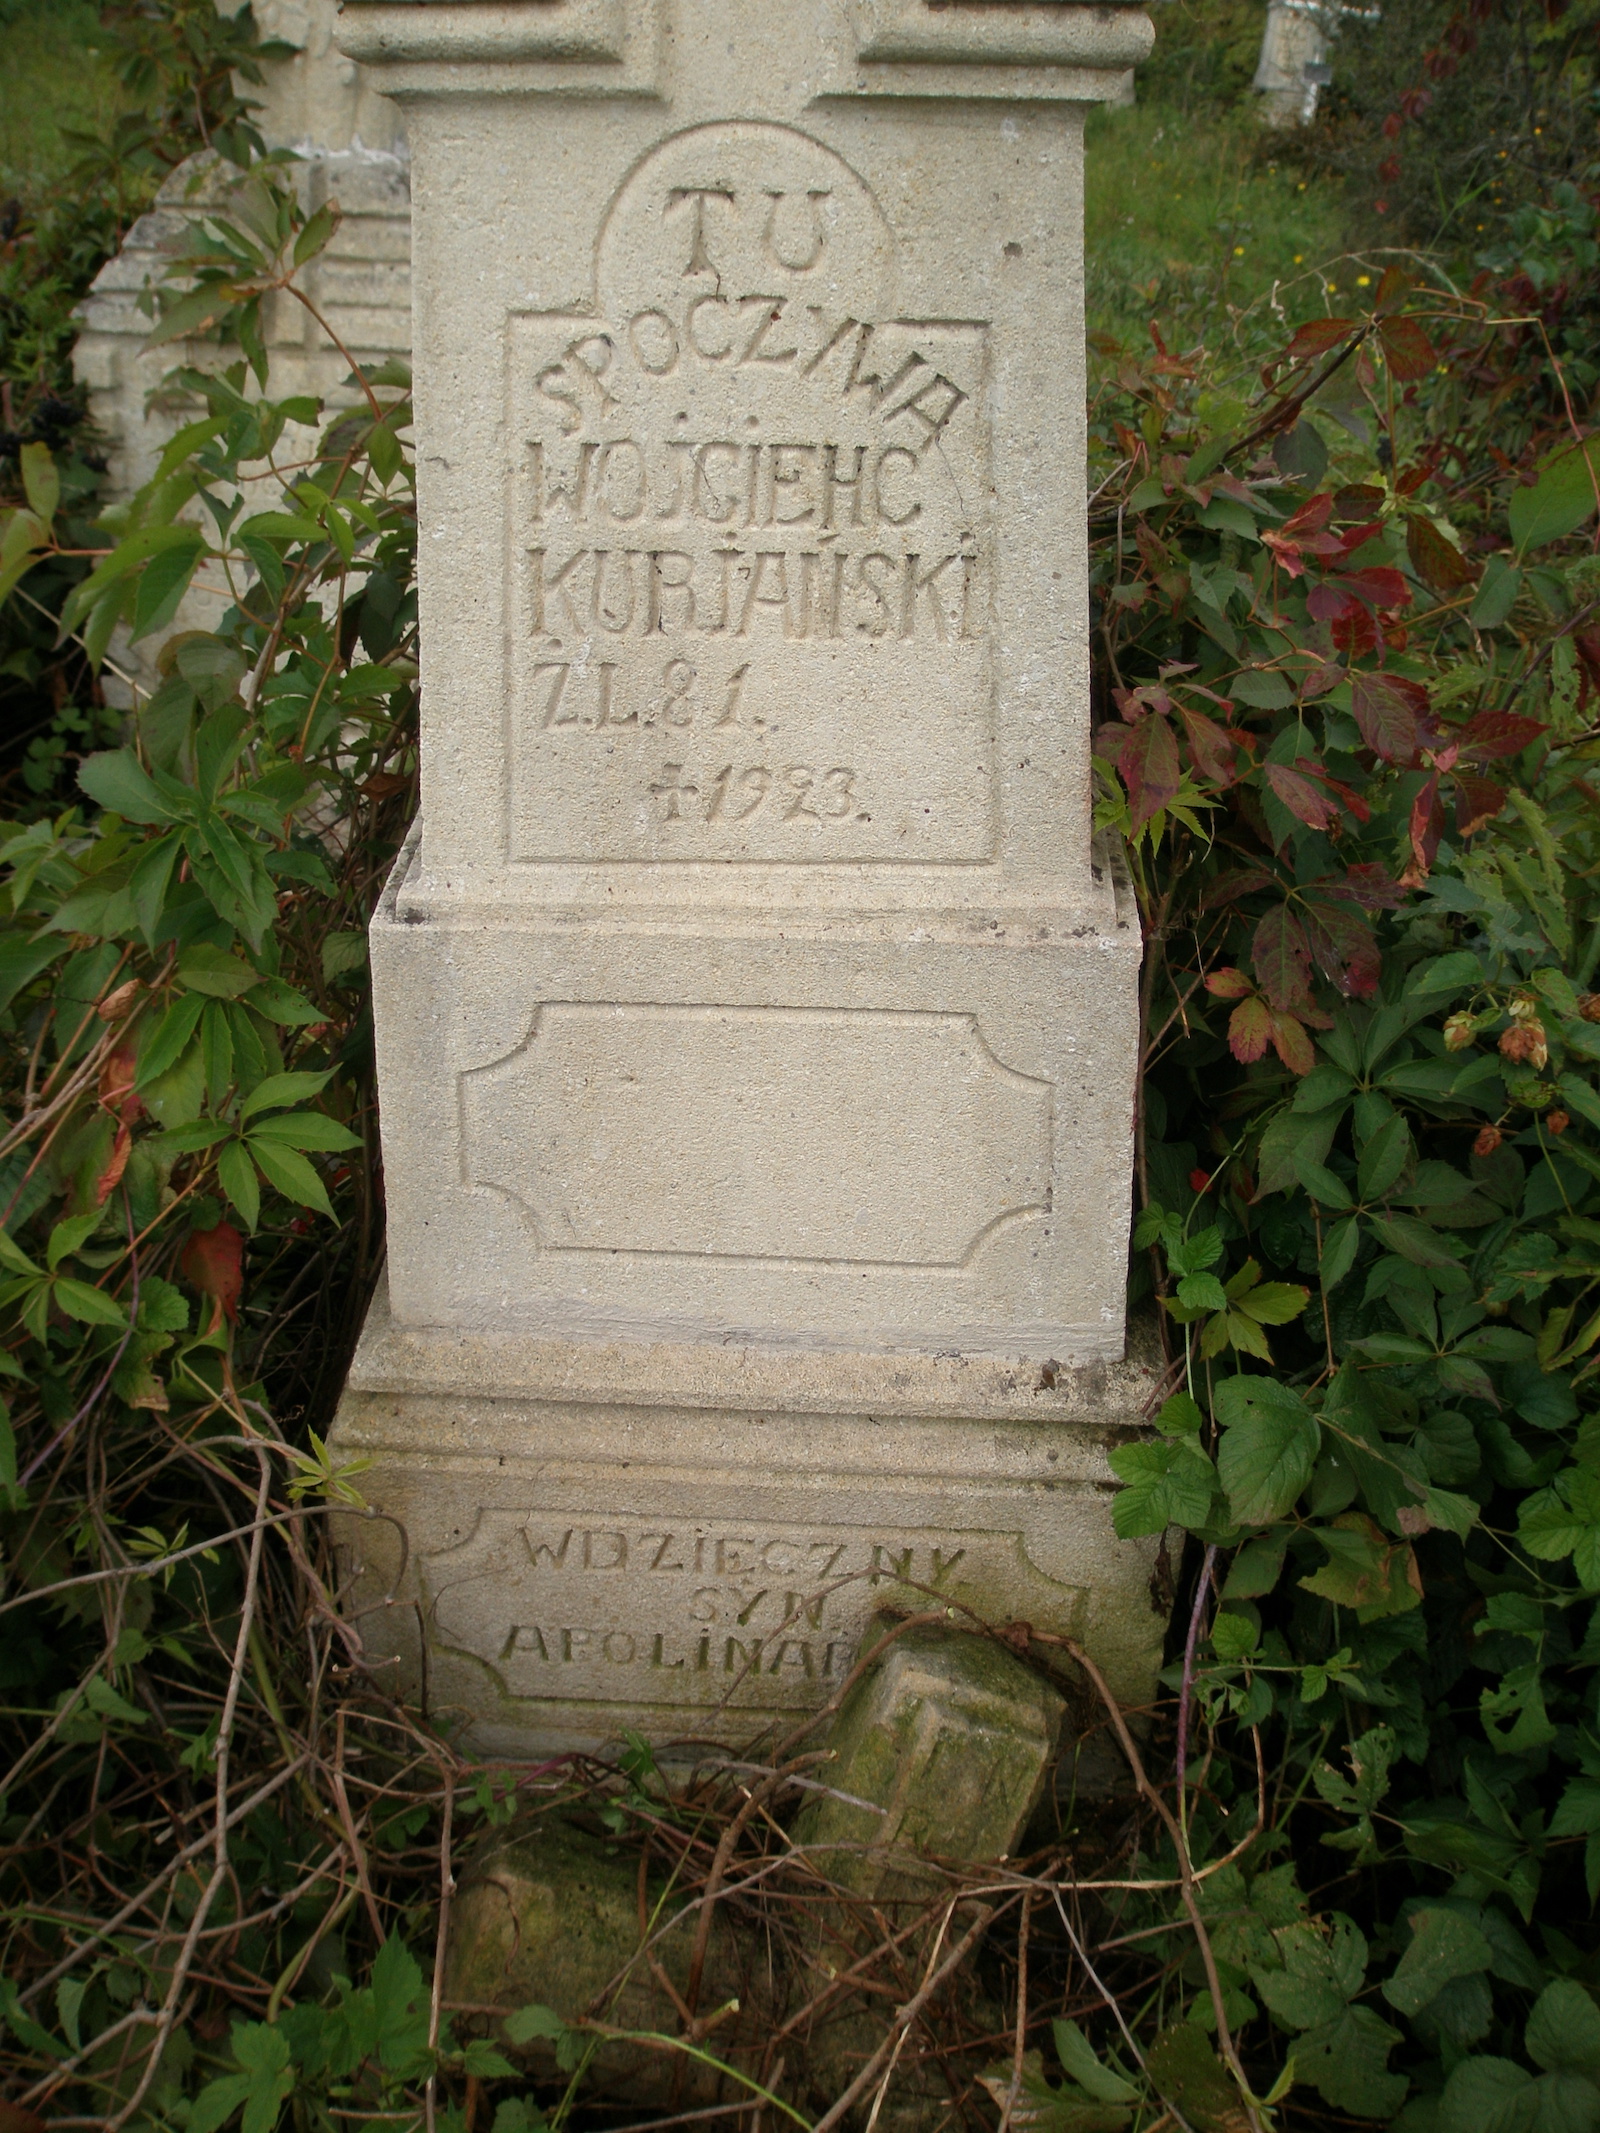 Fragment of Wojciech Kuriański's gravestone, Jazłowiec cemetery, as of 2006.